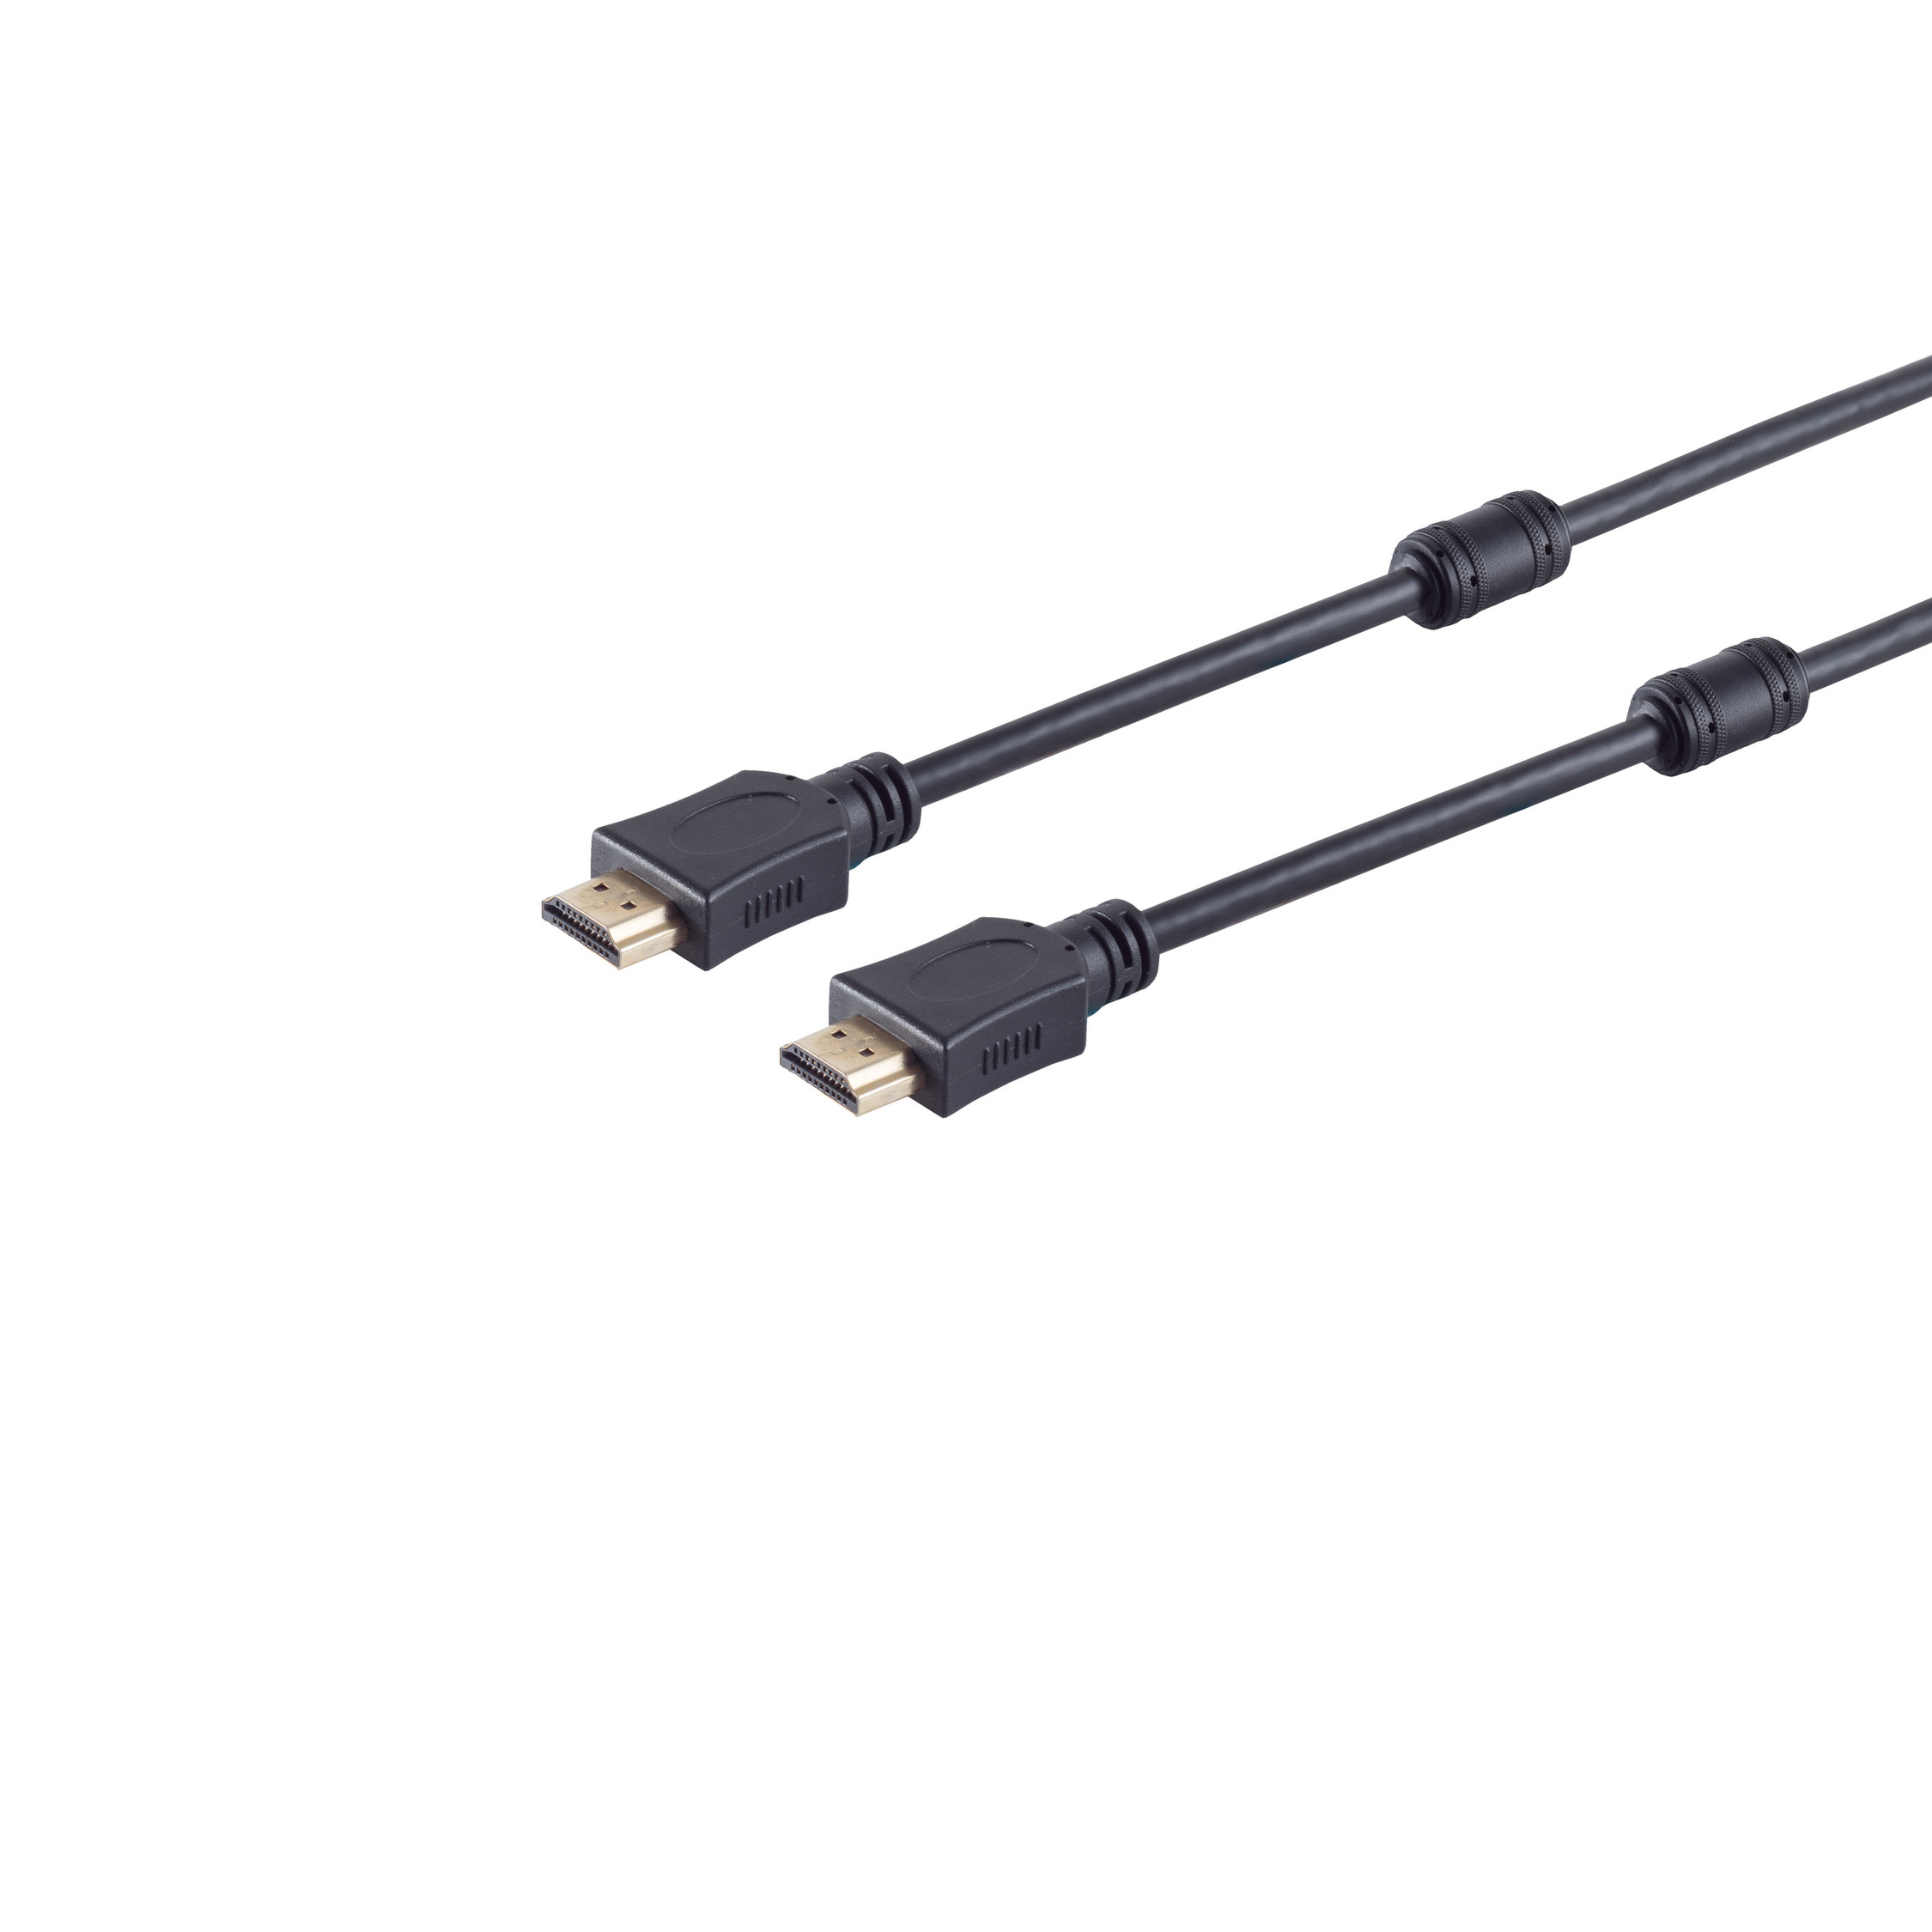 S/CONN MAXIMUM 2m A-Stecker/HDMI HEAC HDMI verg A-Stecker HDMI Kabel Ferrit CONNECTIVITY